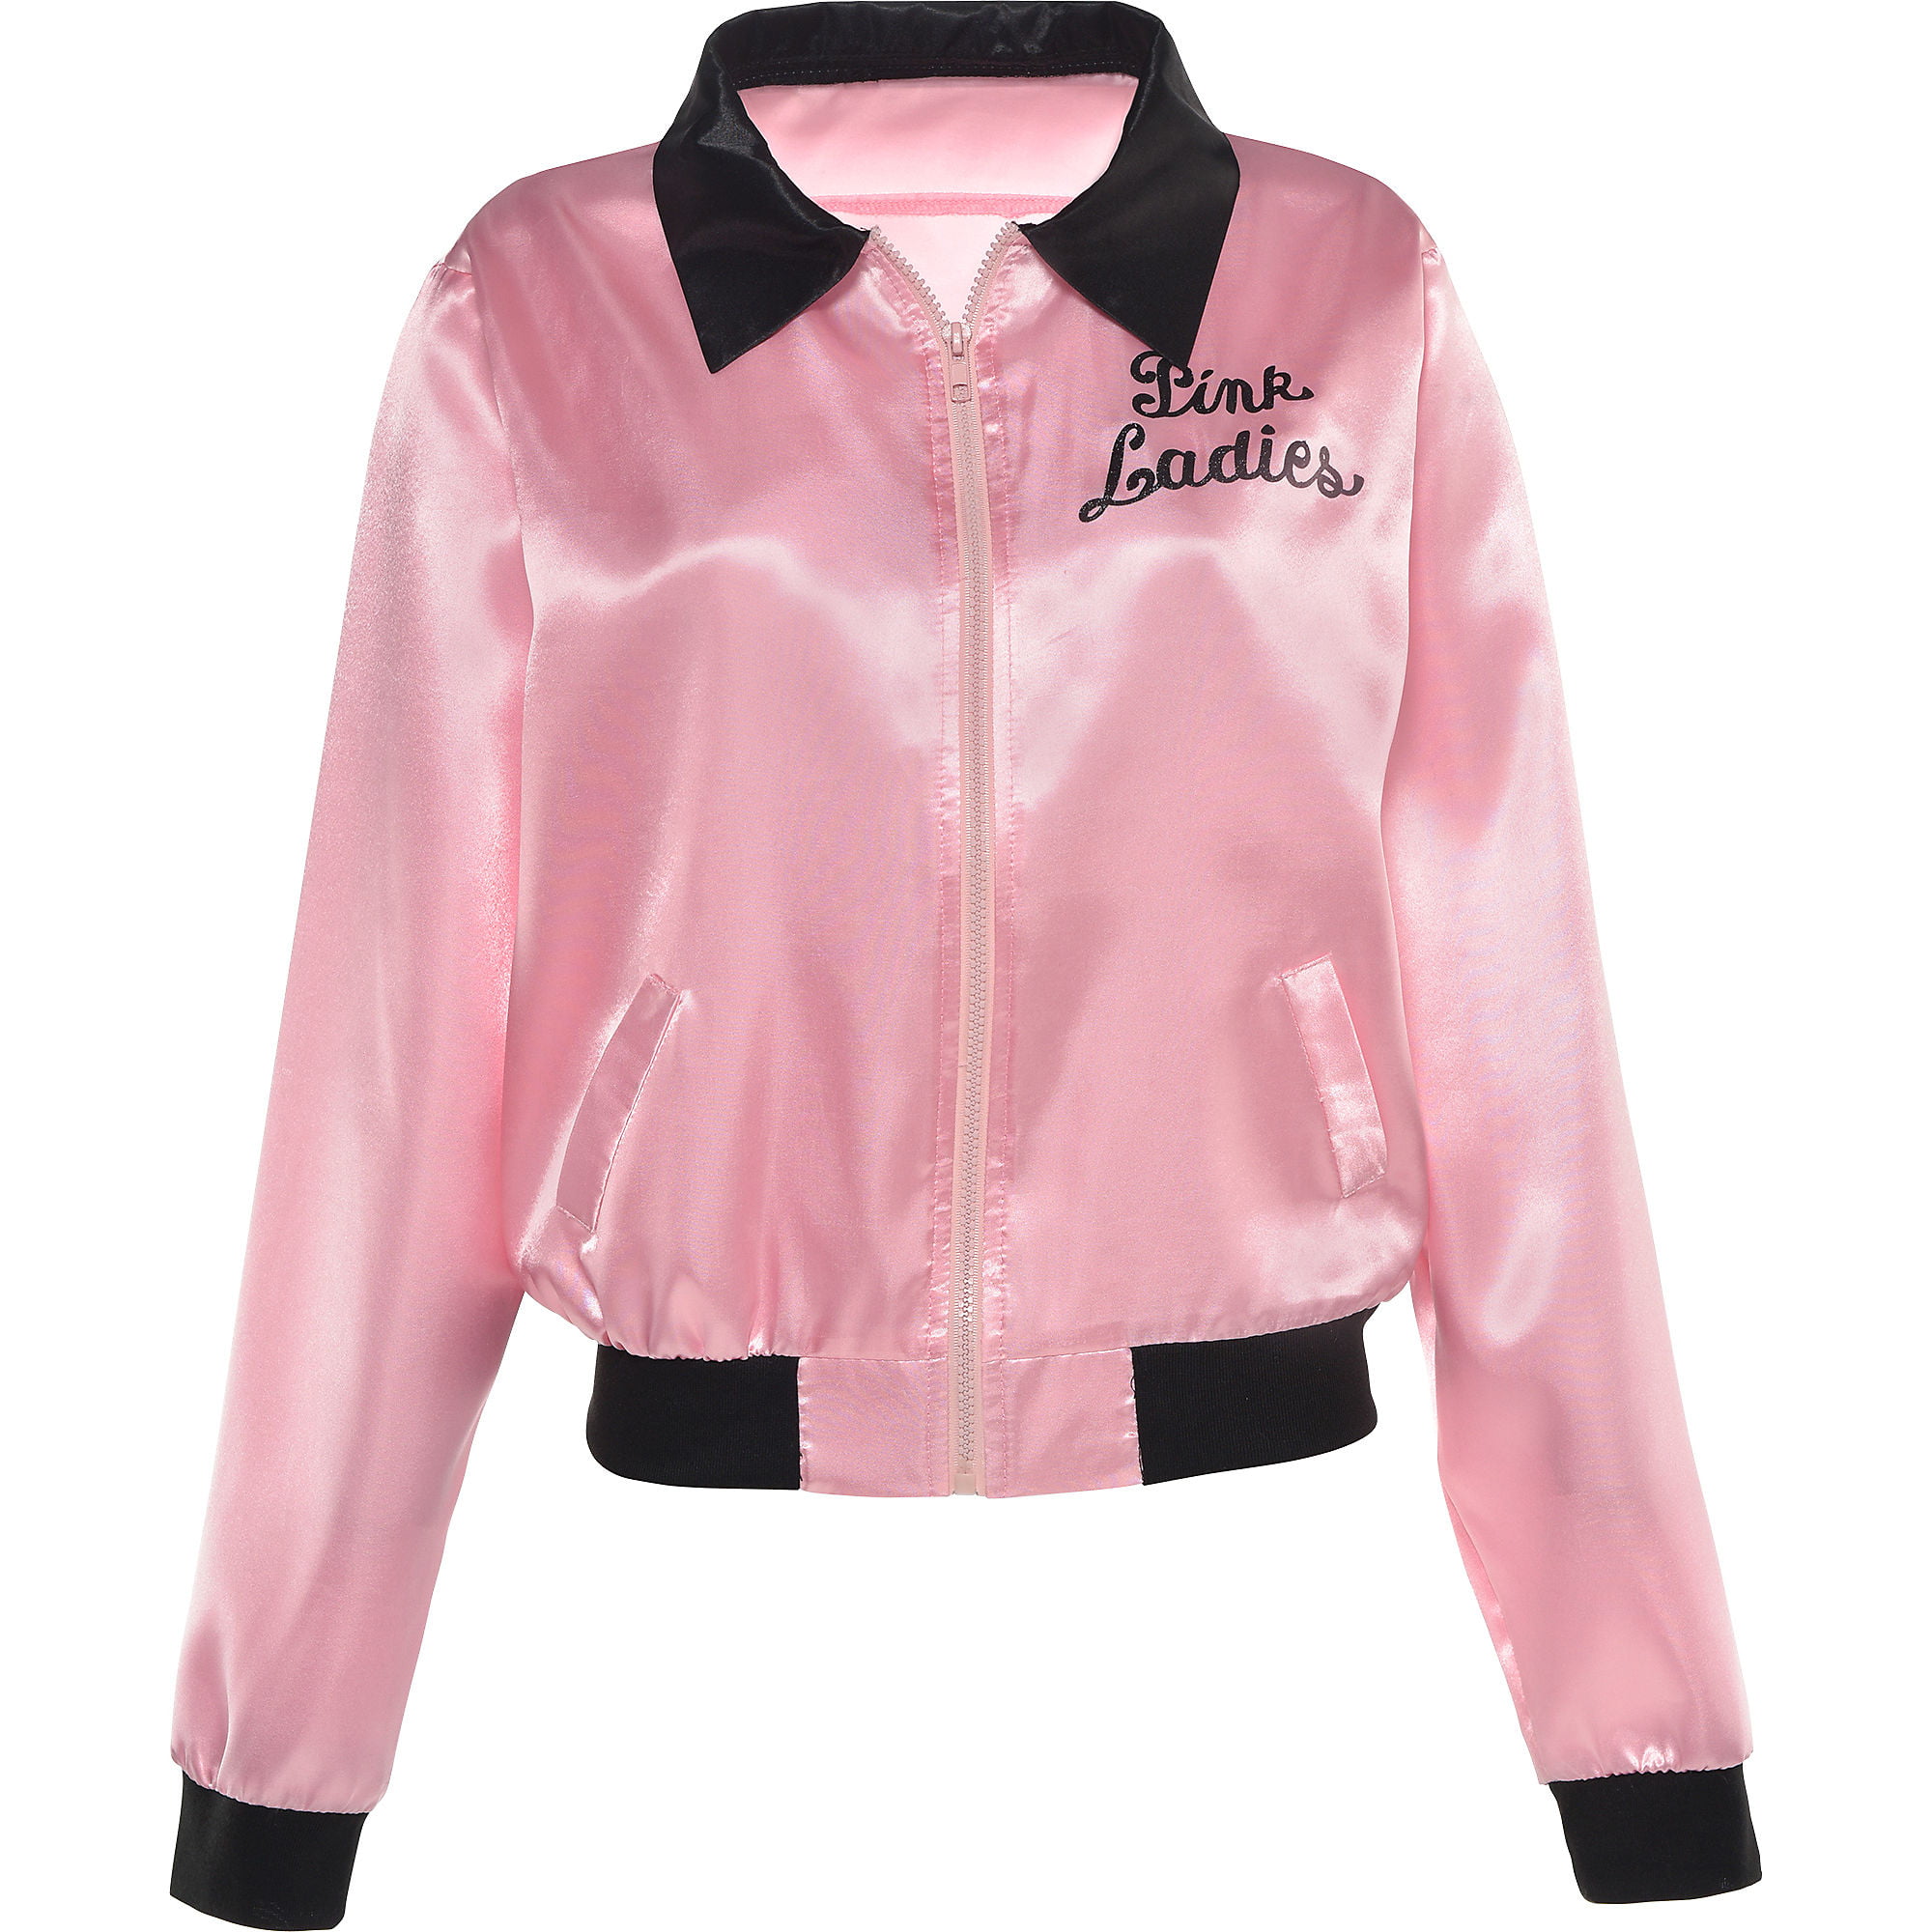 pink ladies jacket size 24